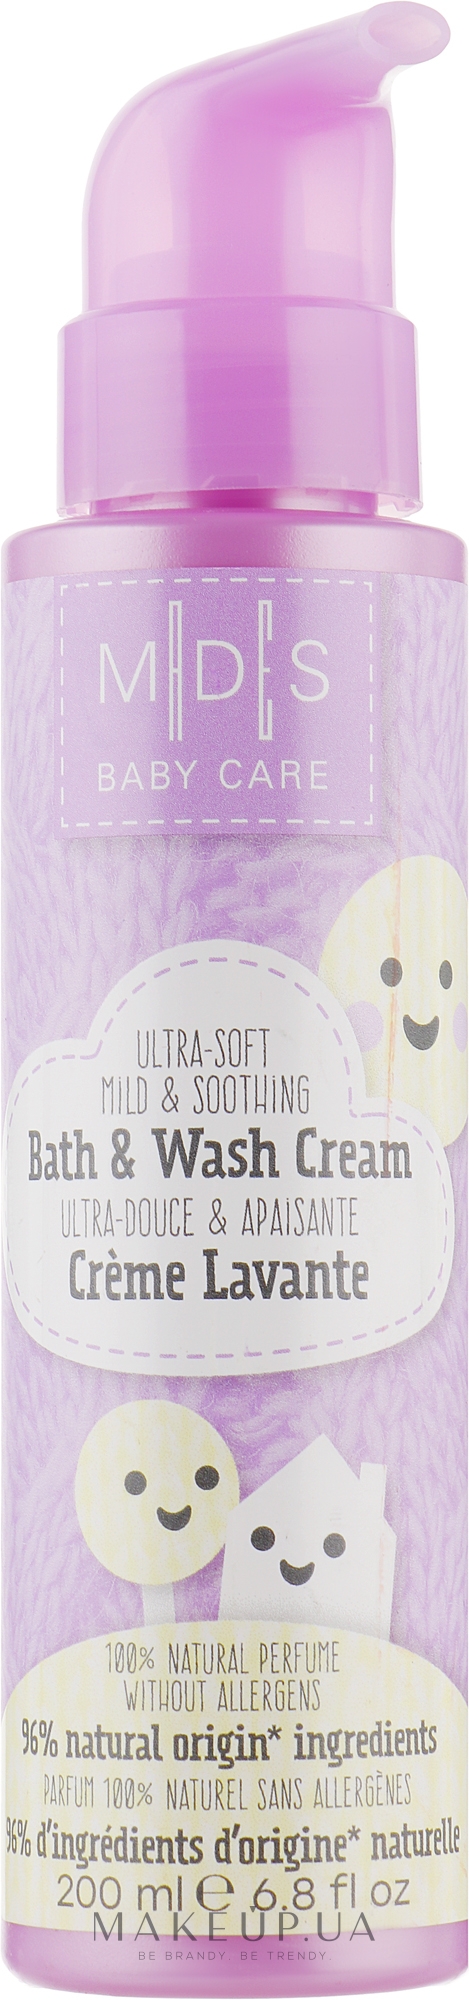 Органическая кремовая гель-пенка для купания младенцев - Mades Cosmetics M|D|S Baby Care Bath & Wash Cream — фото 200ml